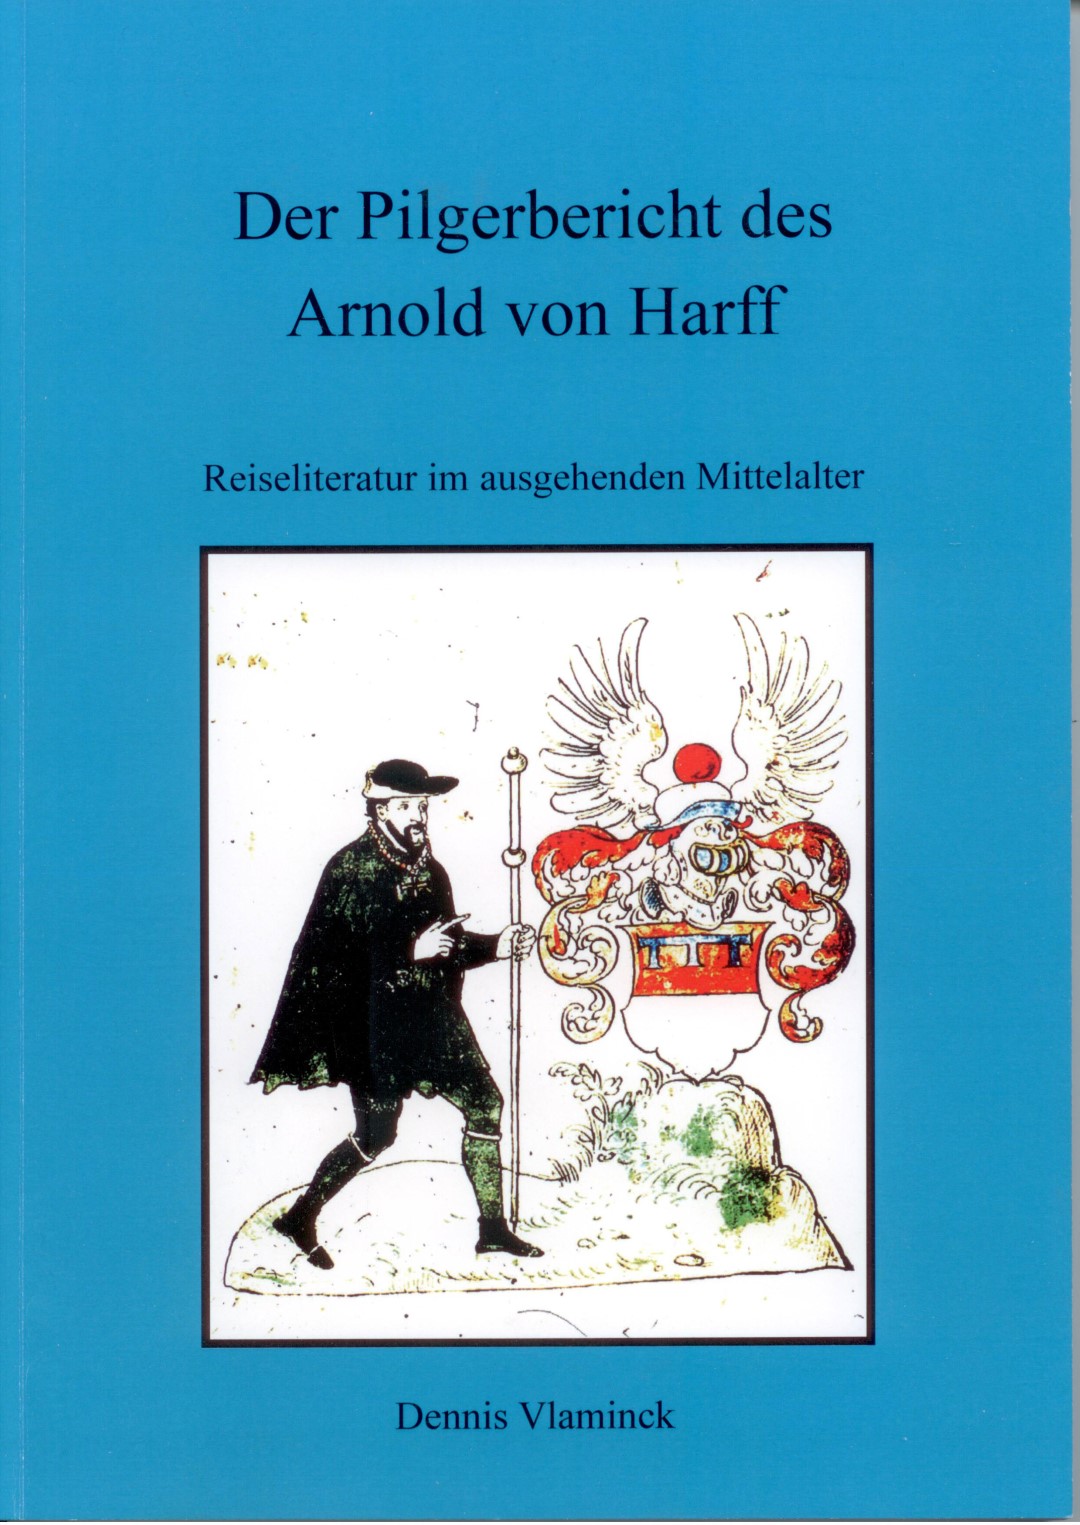 Pilgerbuch des Ritters Arnold von Harff